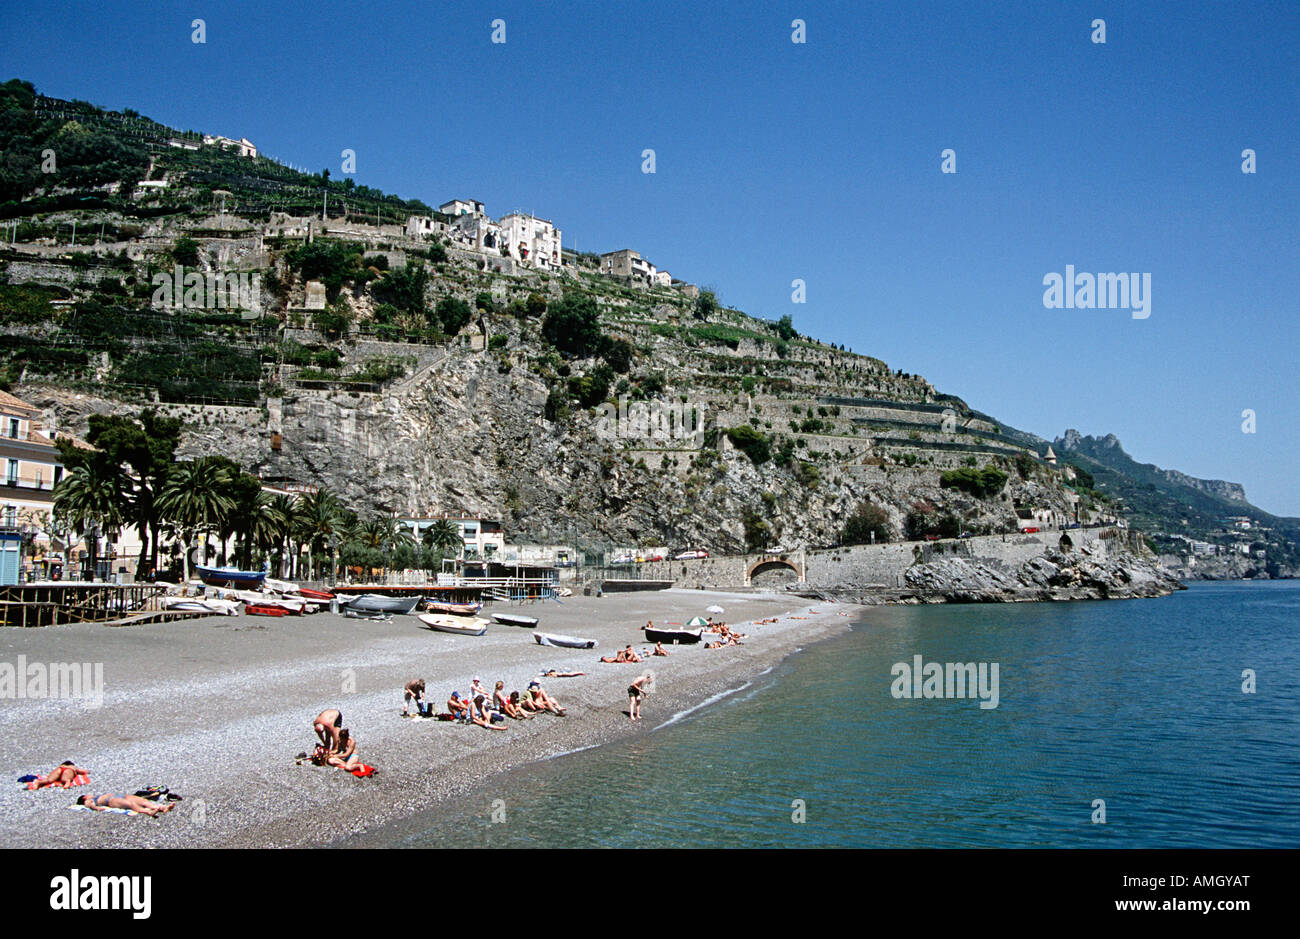 La plage de Minori, Minori, sur la côte amalfitaine, Campanie, Italie Banque D'Images